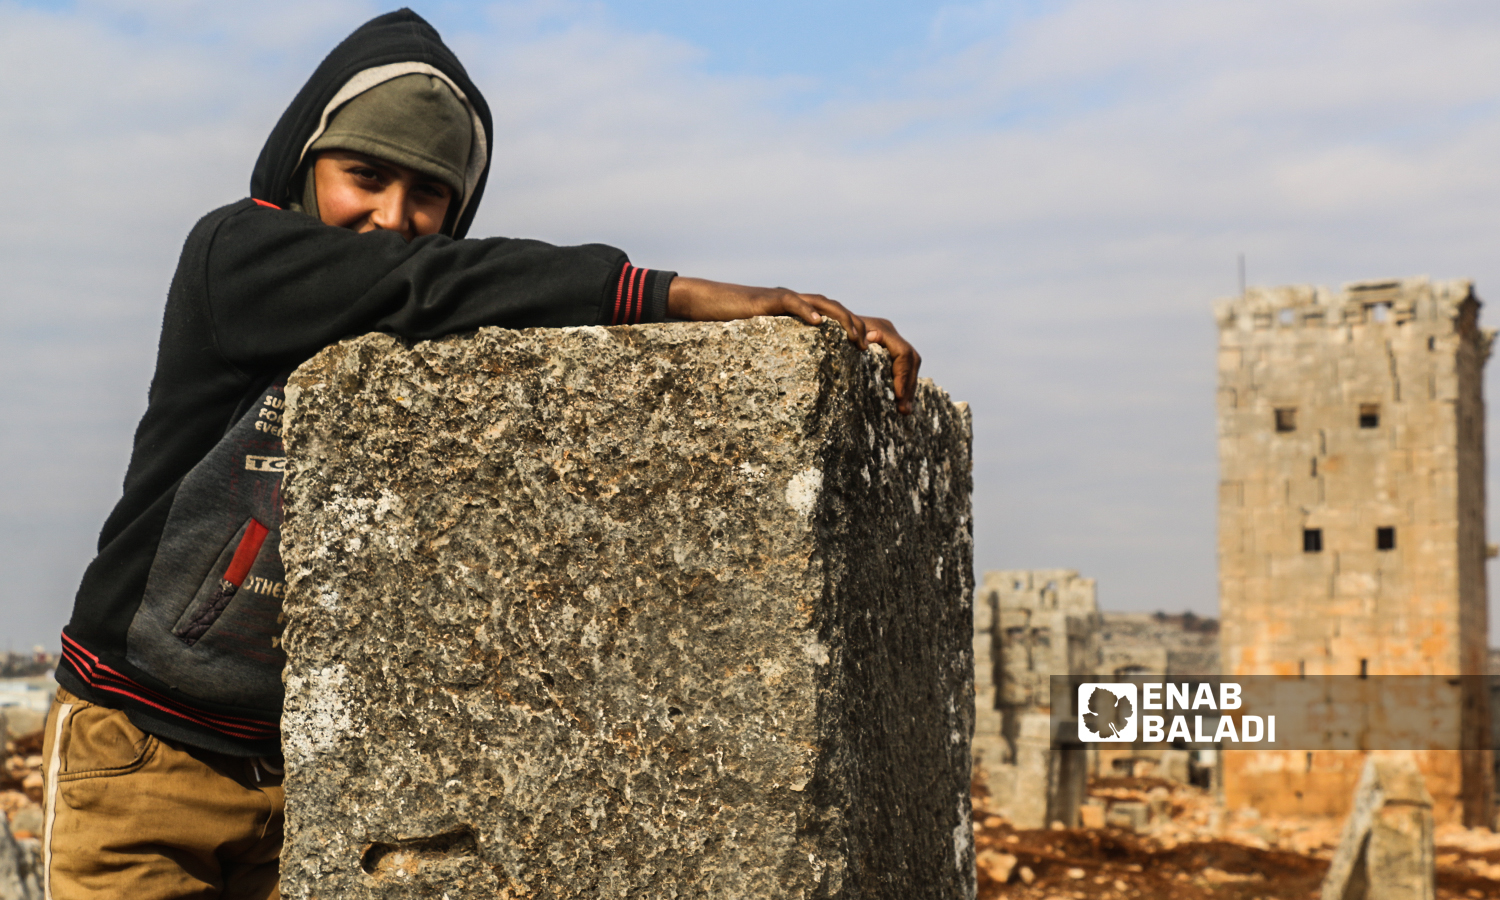 طفلة تقف بالقرب من برج أثري في منطقة سرجبلة الأثرية في ريف إدلب الشمالي- 22 كانون الثاني 2022 (عنب بلدي / إياد عبد الجواد)
